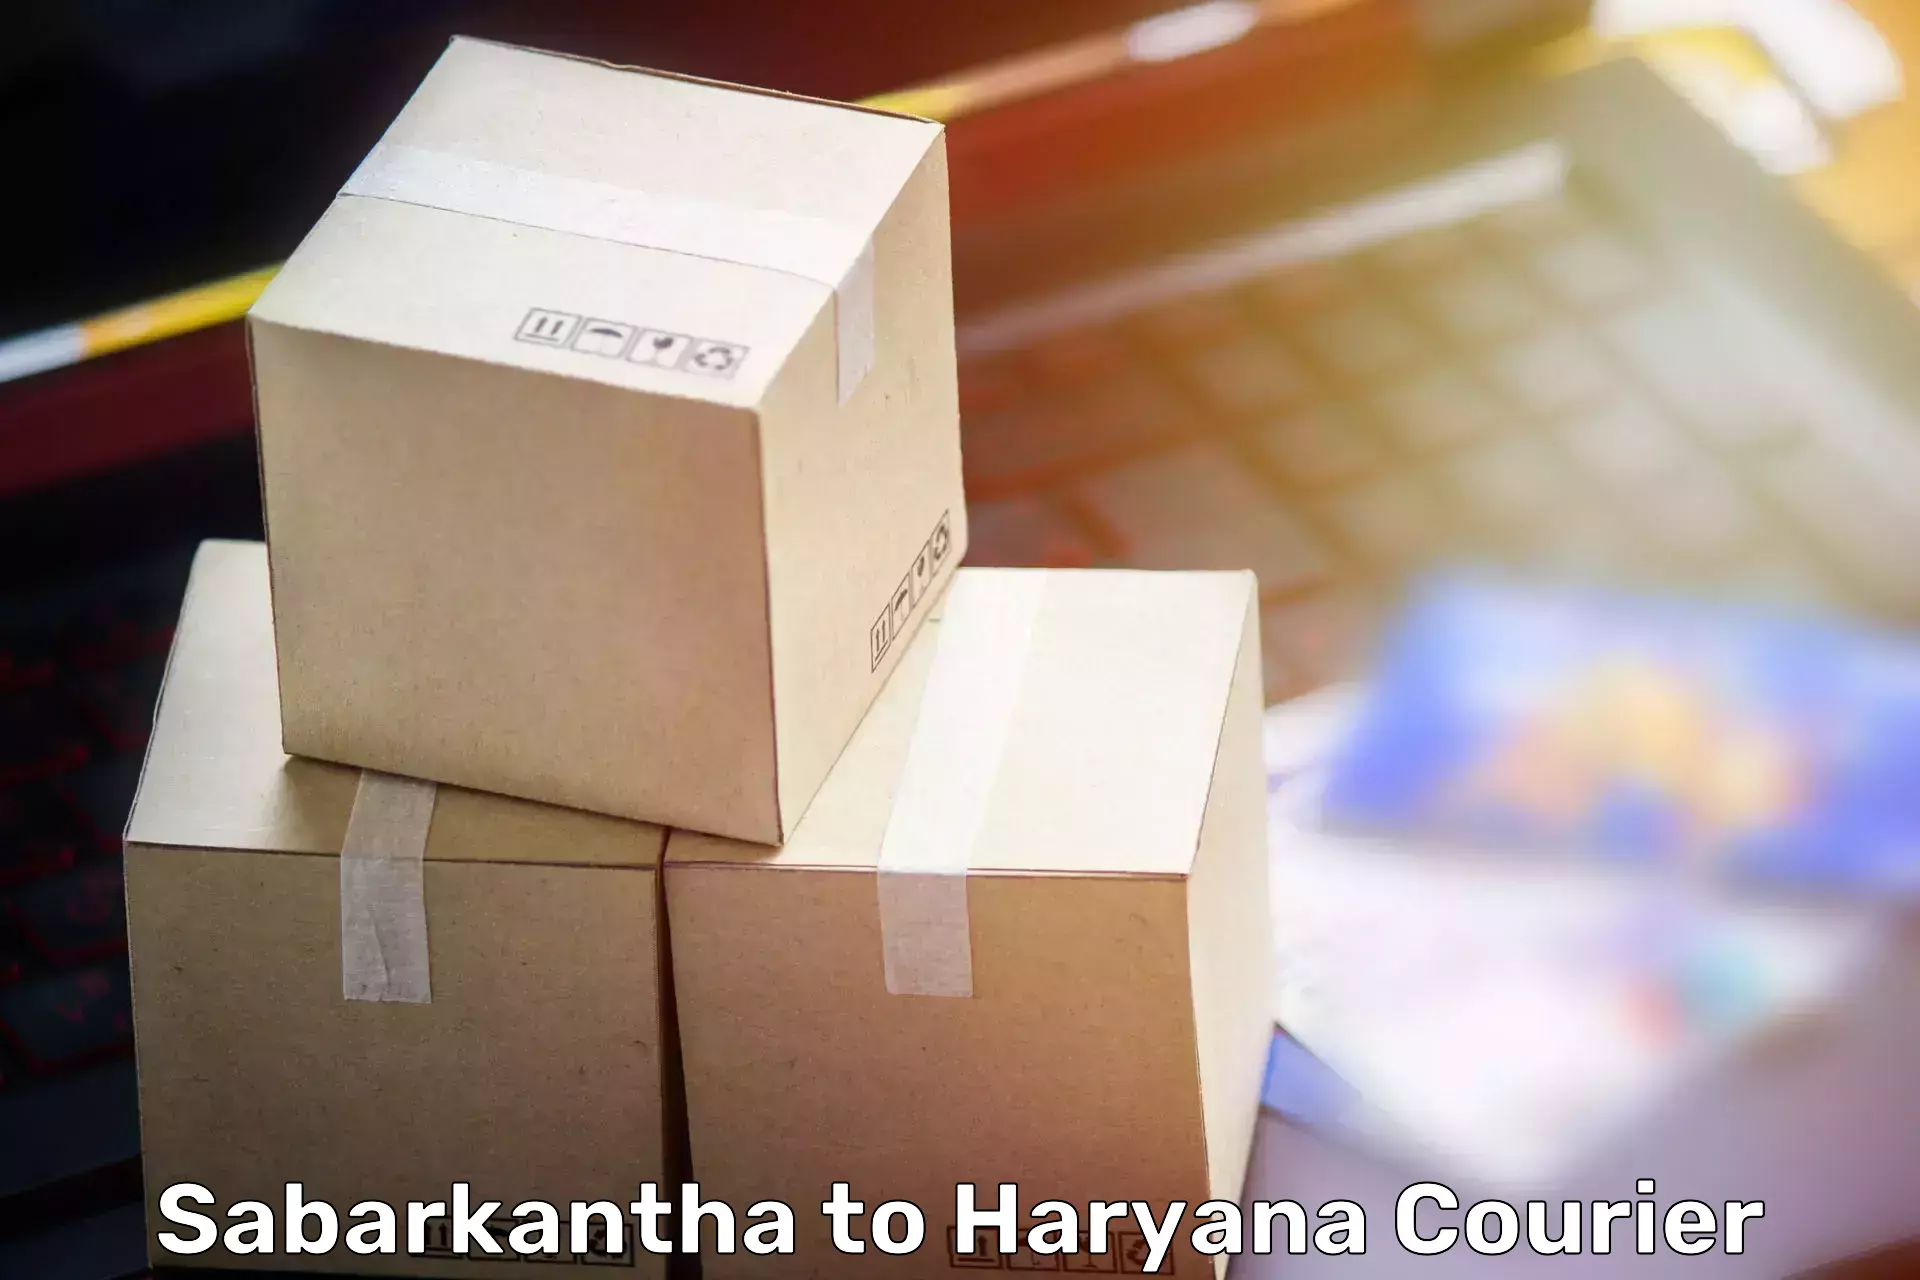 Furniture moving experts in Sabarkantha to Dharuhera